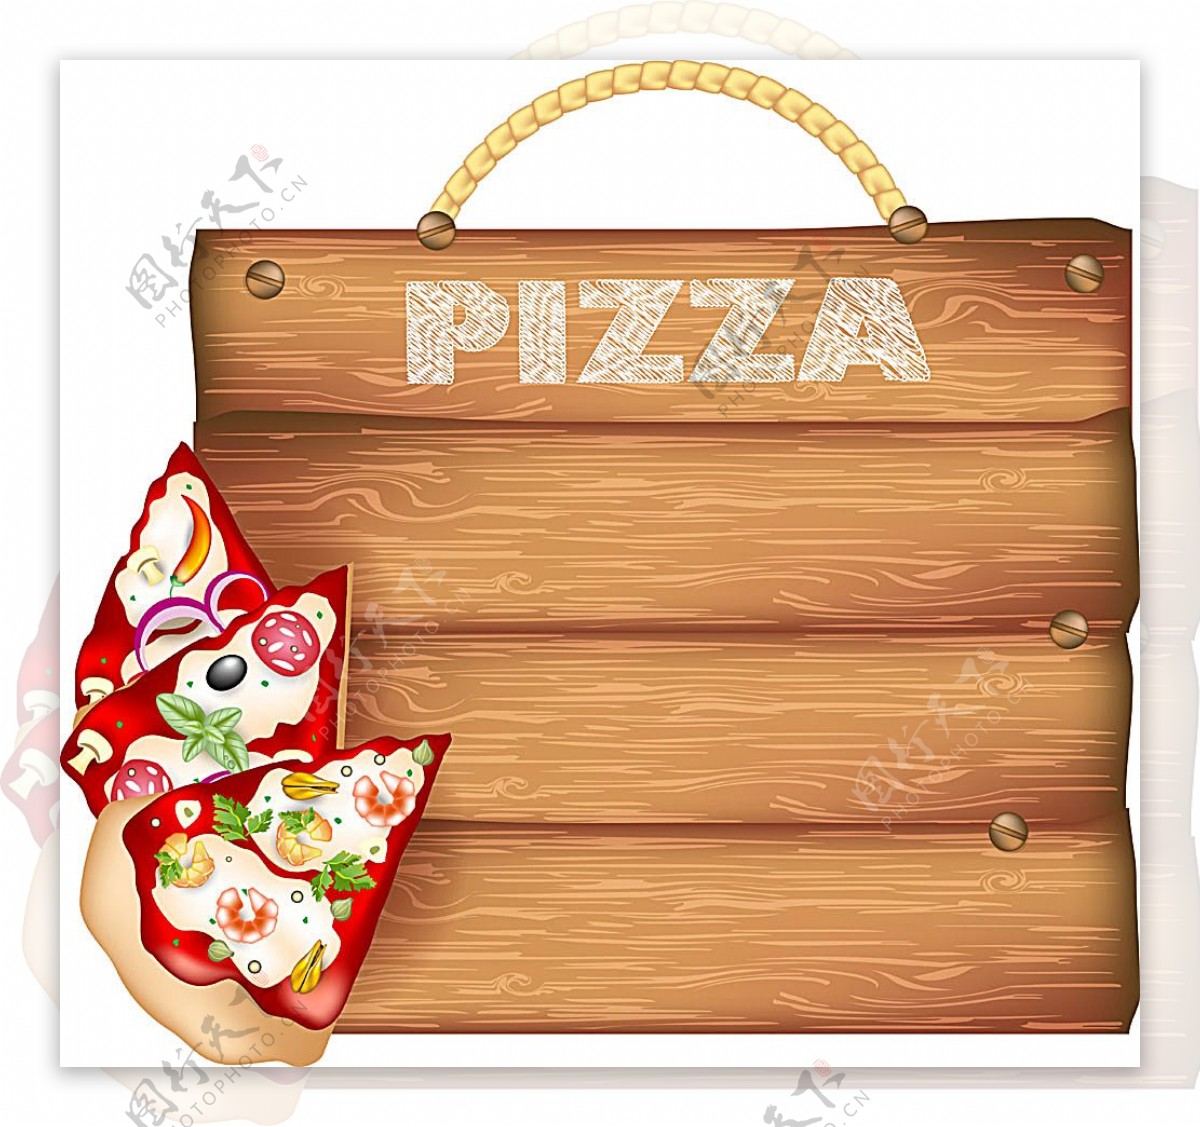 披萨与木板